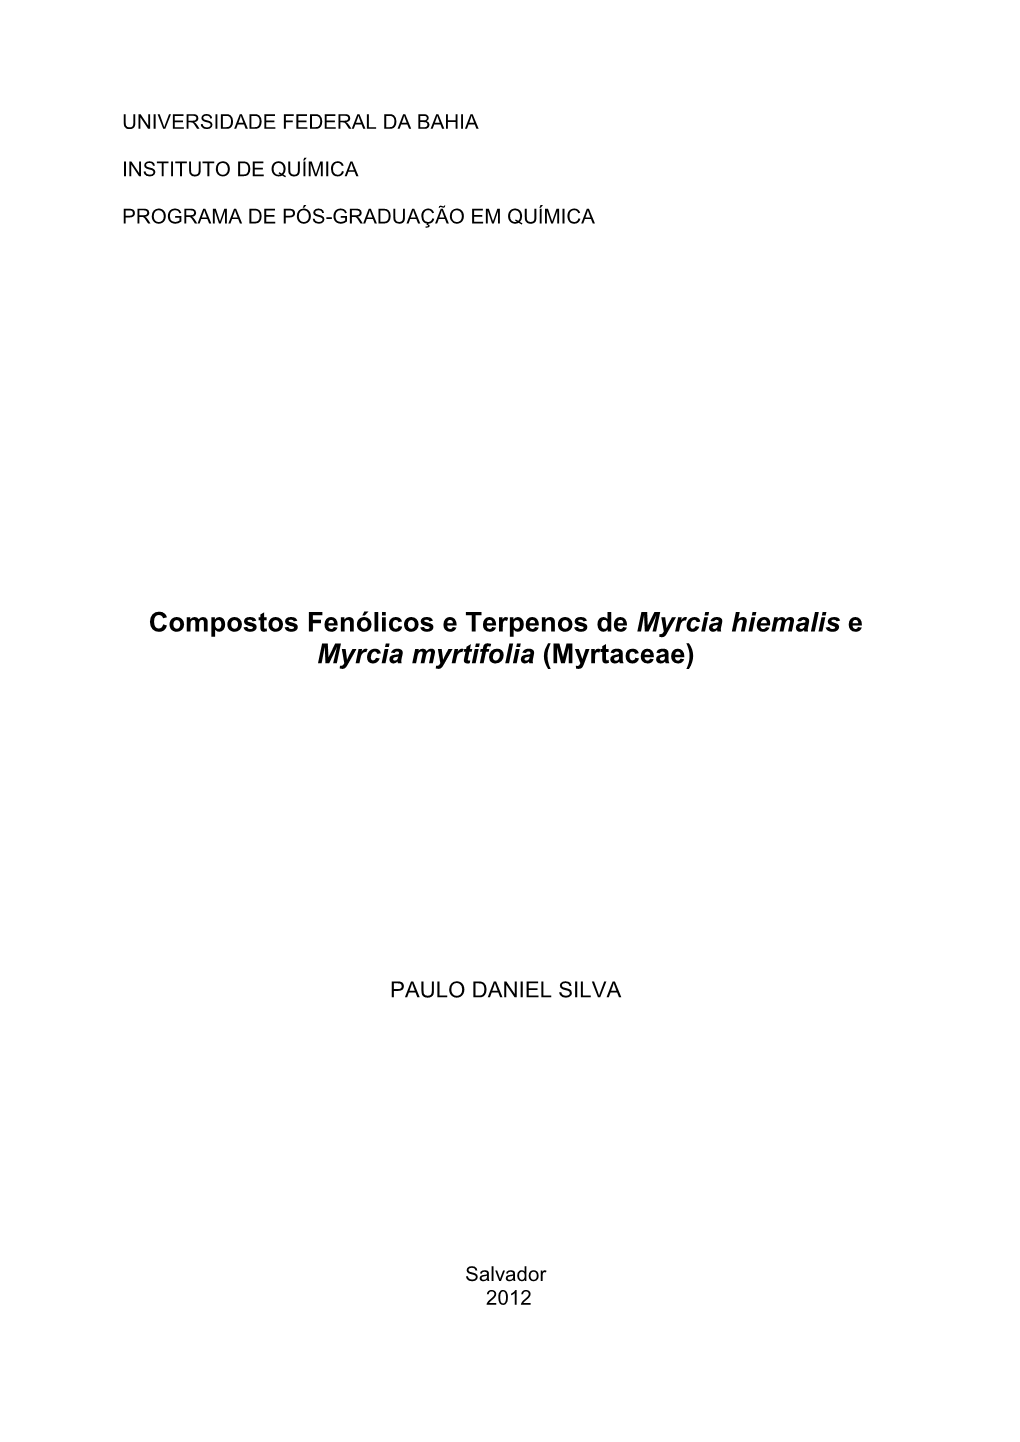 Compostos Fenólicos E Terpenos De Myrcia Hiemalis E Myrcia Myrtifolia (Myrtaceae)